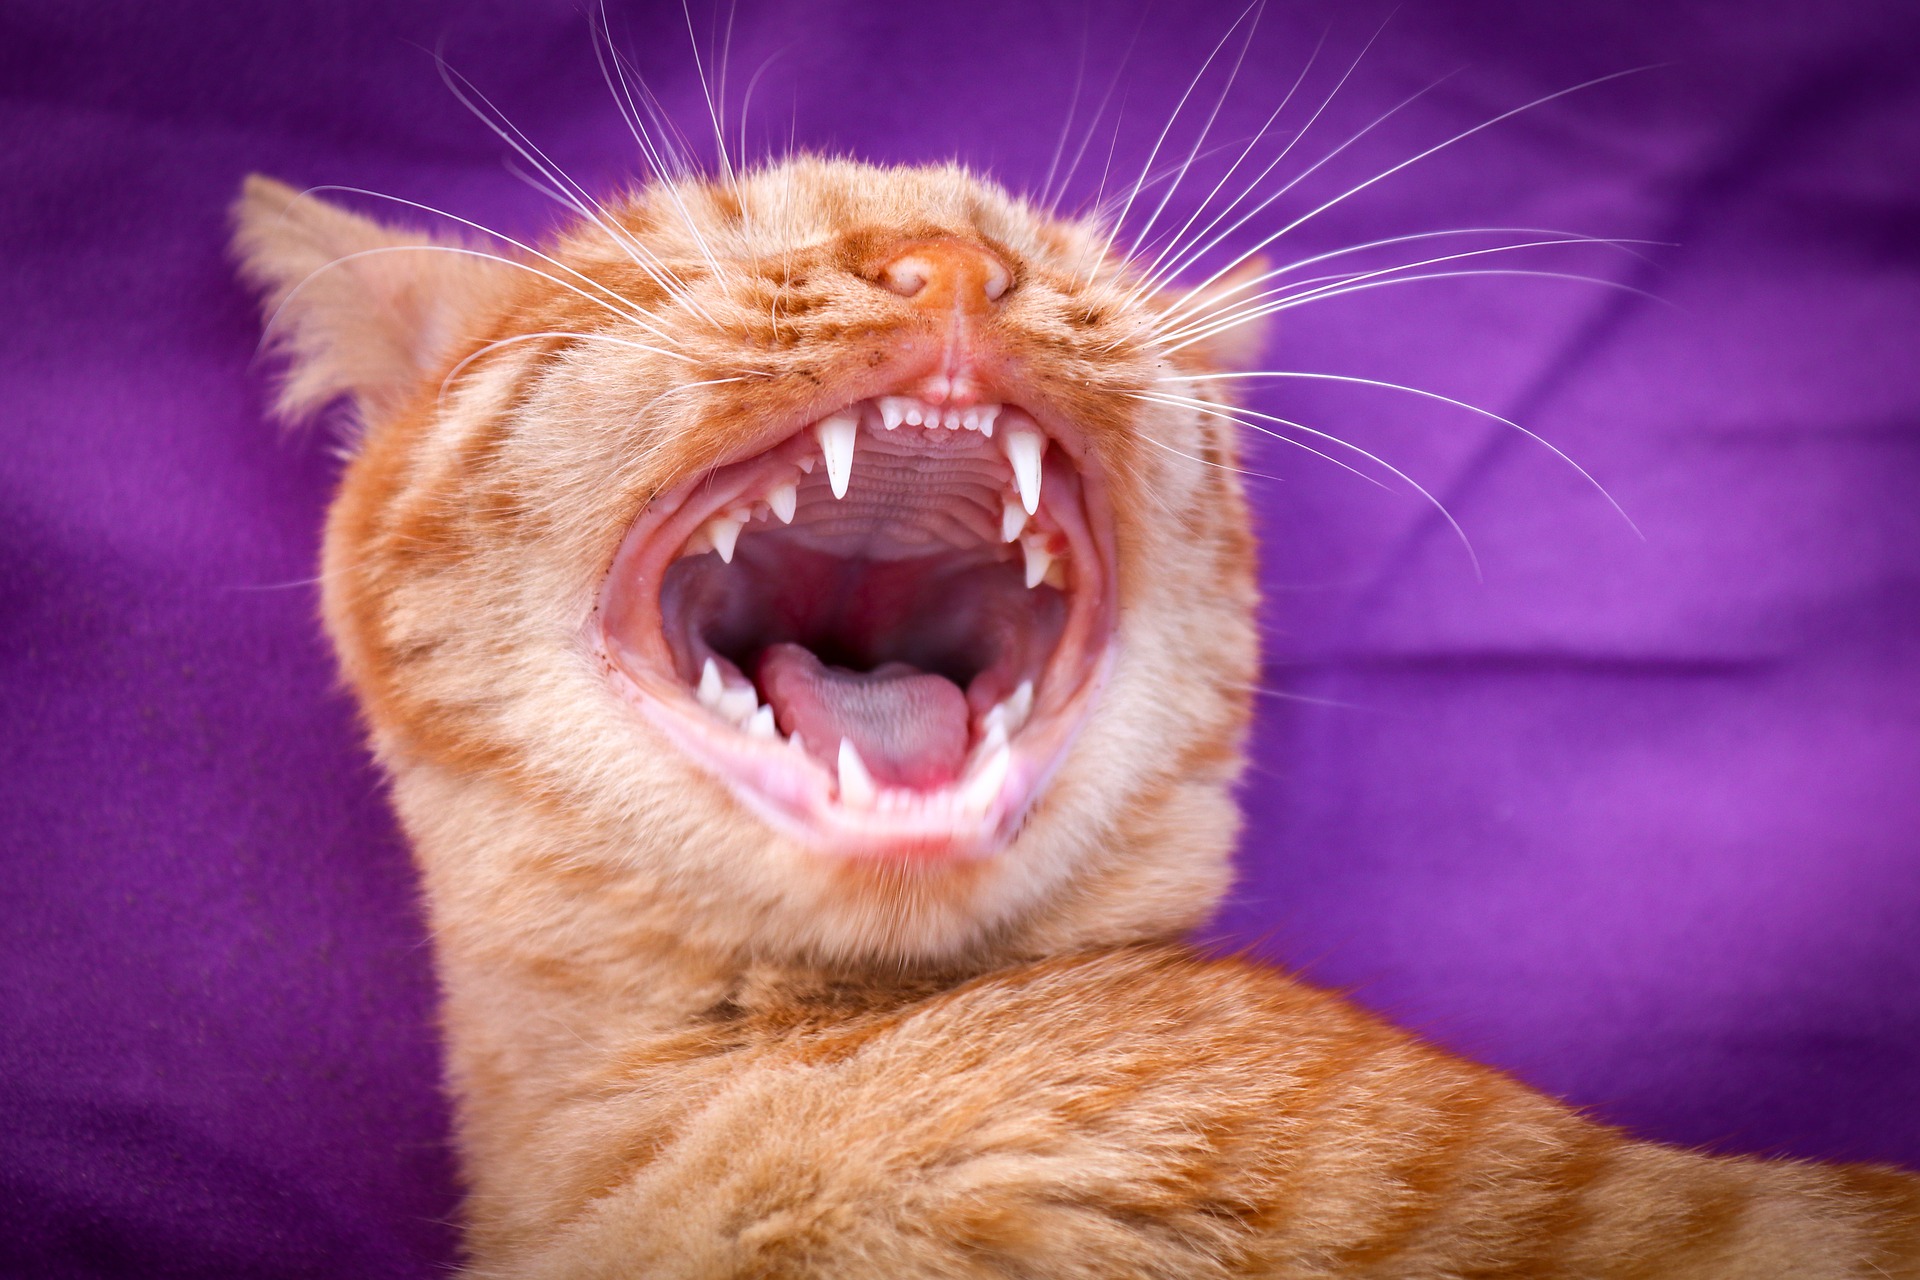 Gingivitida u koček nemusí zpočátku vykazovat žádné zjevné příznaky. V počátečních fázích obvykle uvidíte zarudlé dásně kolem zubů vaší kočky.